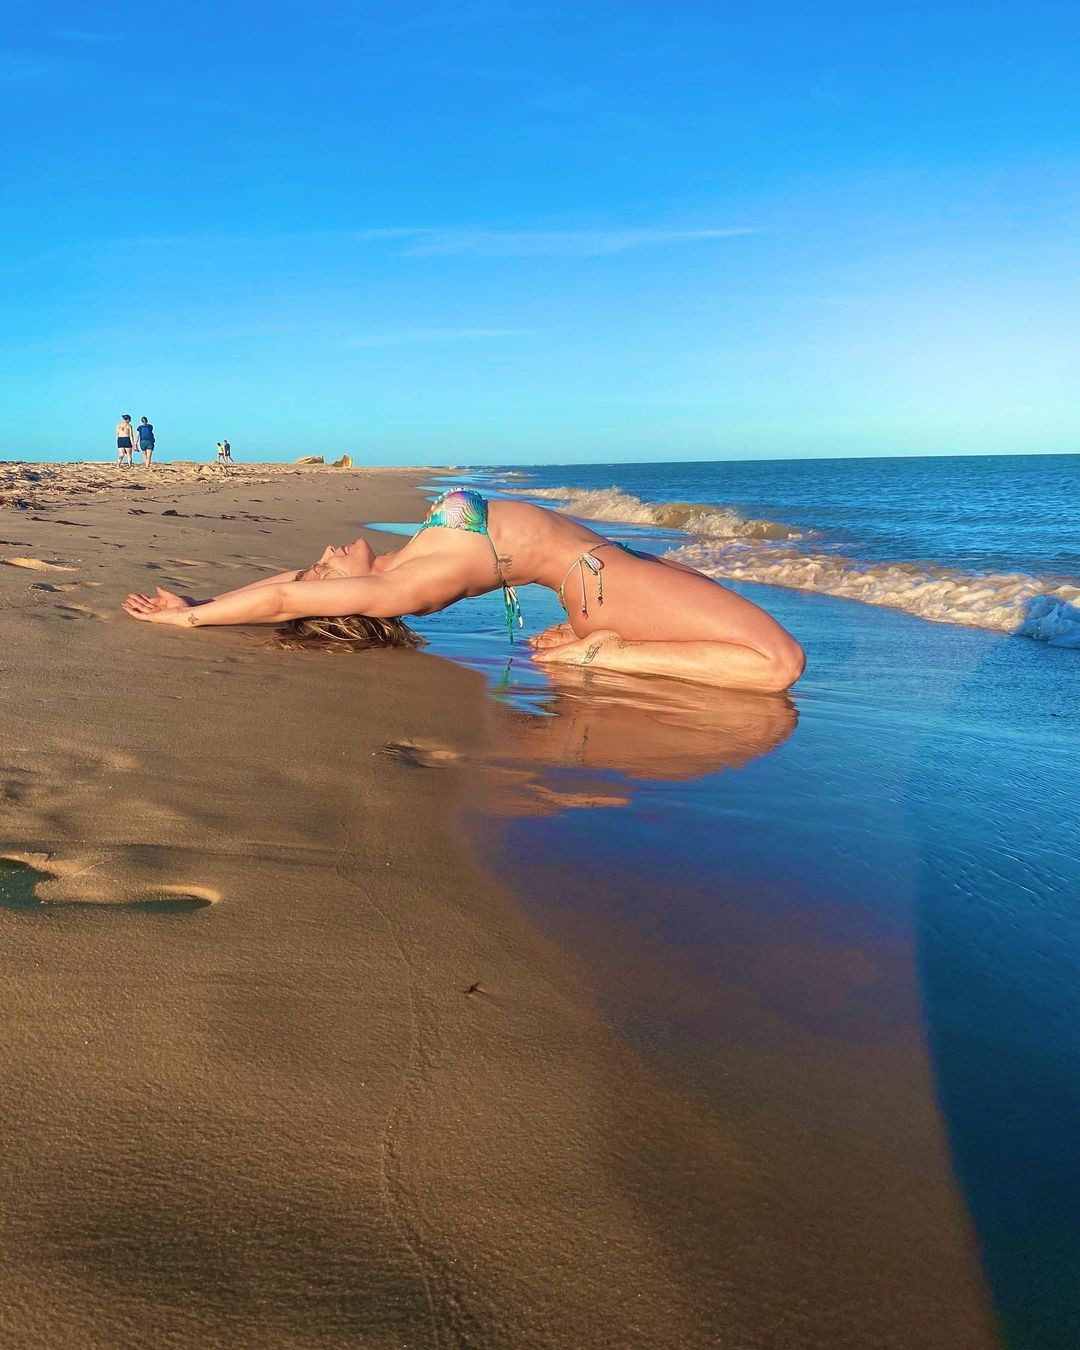 Sheila Mello surge em pose inusitada em clique na praia (Foto: reprodução/instagram)